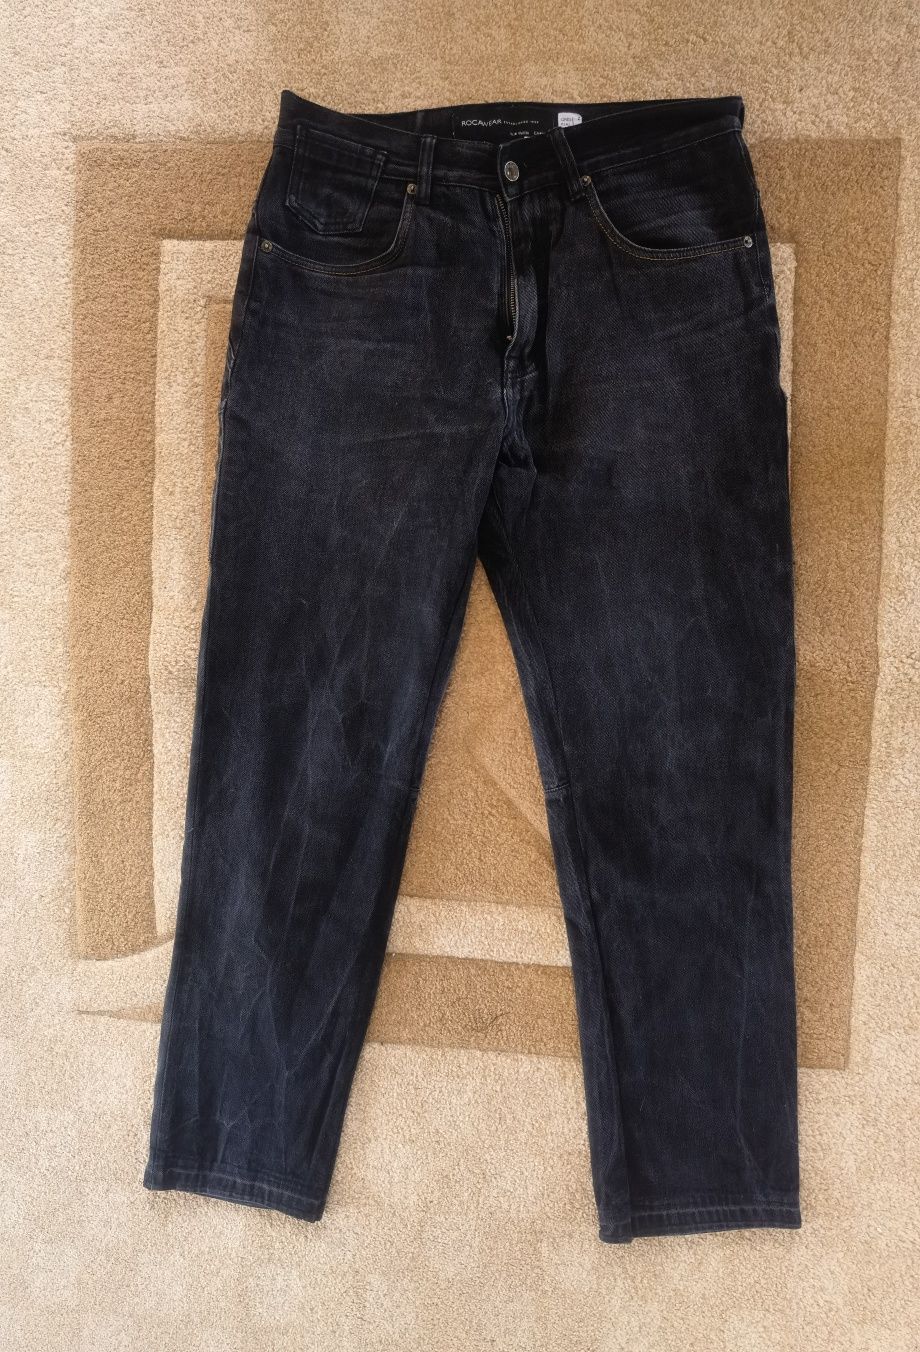 Оригинални мъжки дънки g-star, replay, pepe jeans, Levi's размери 32-3